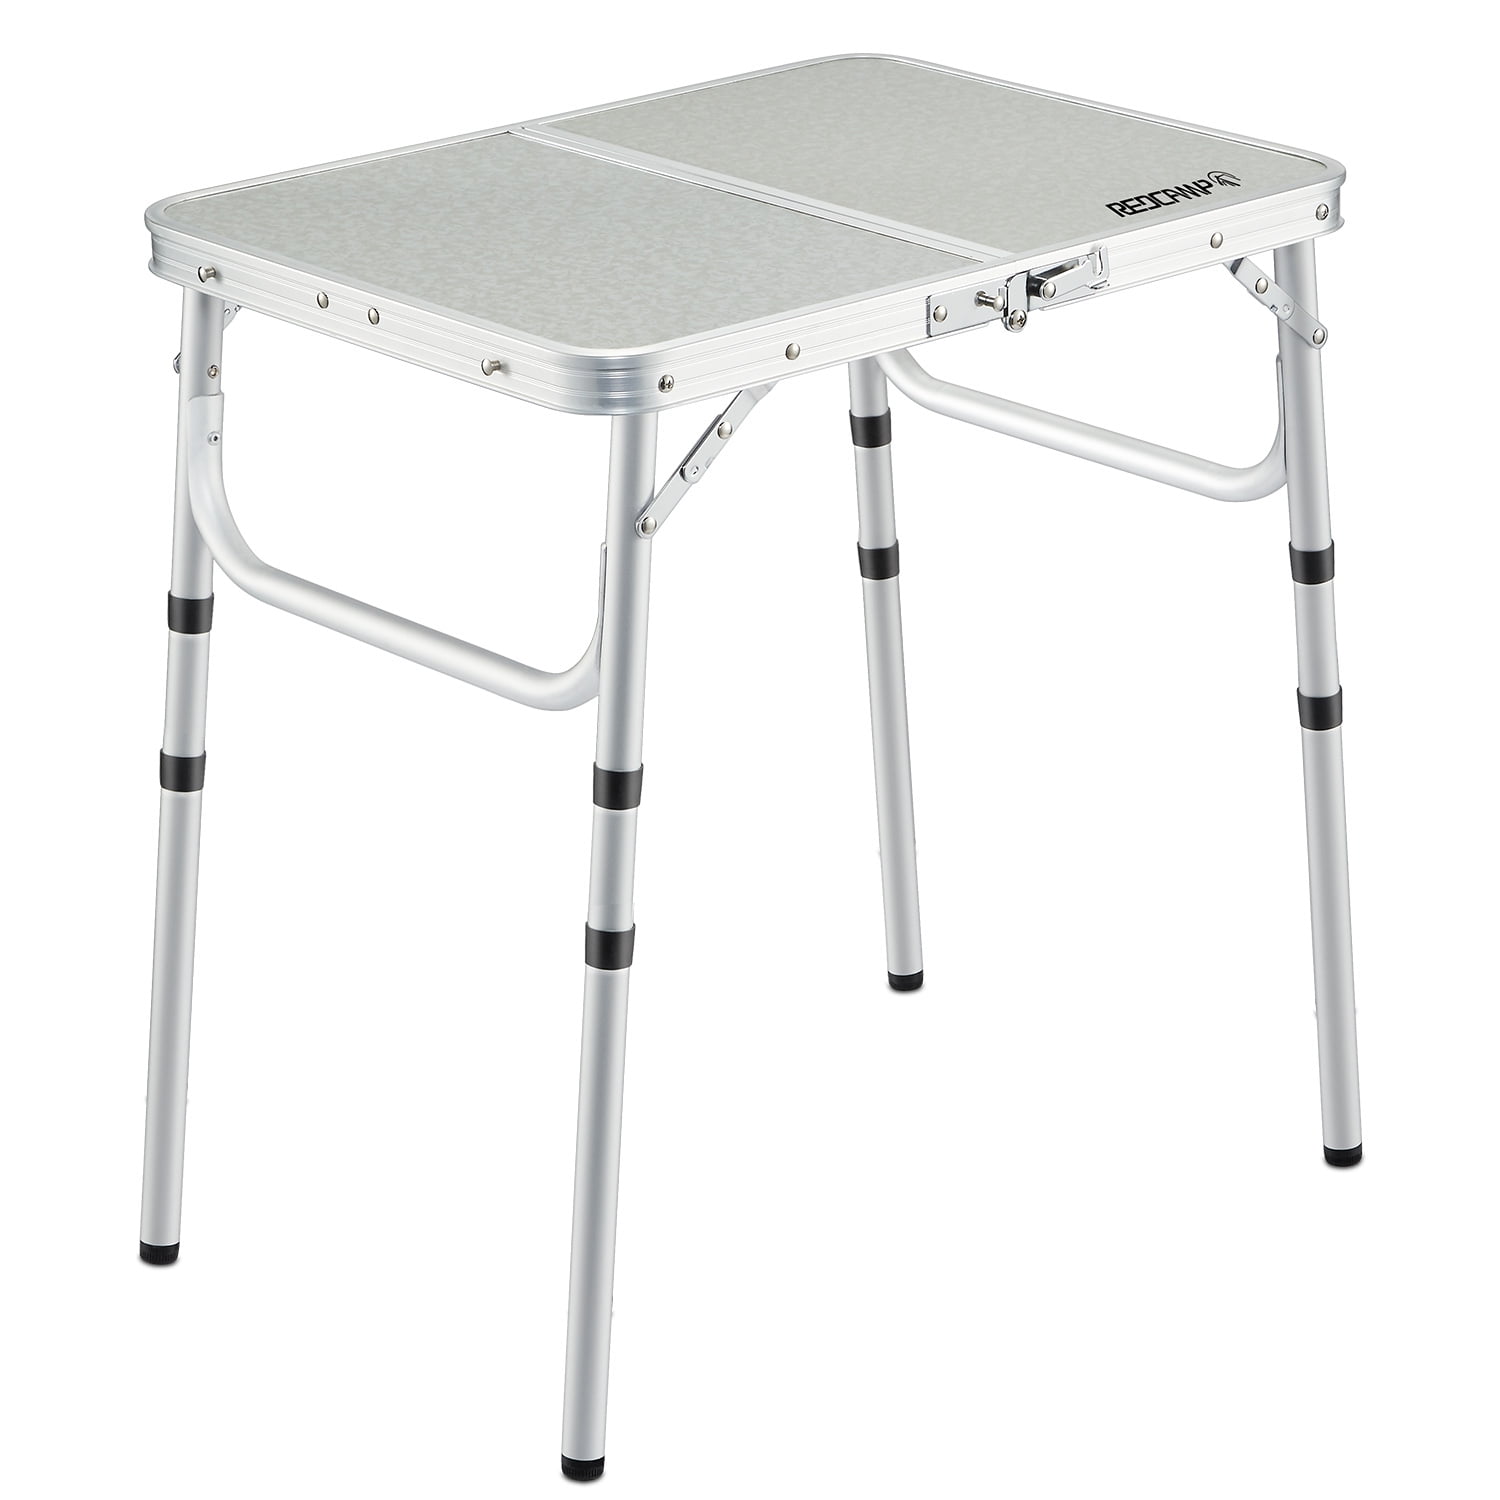 aluminum folding camping table